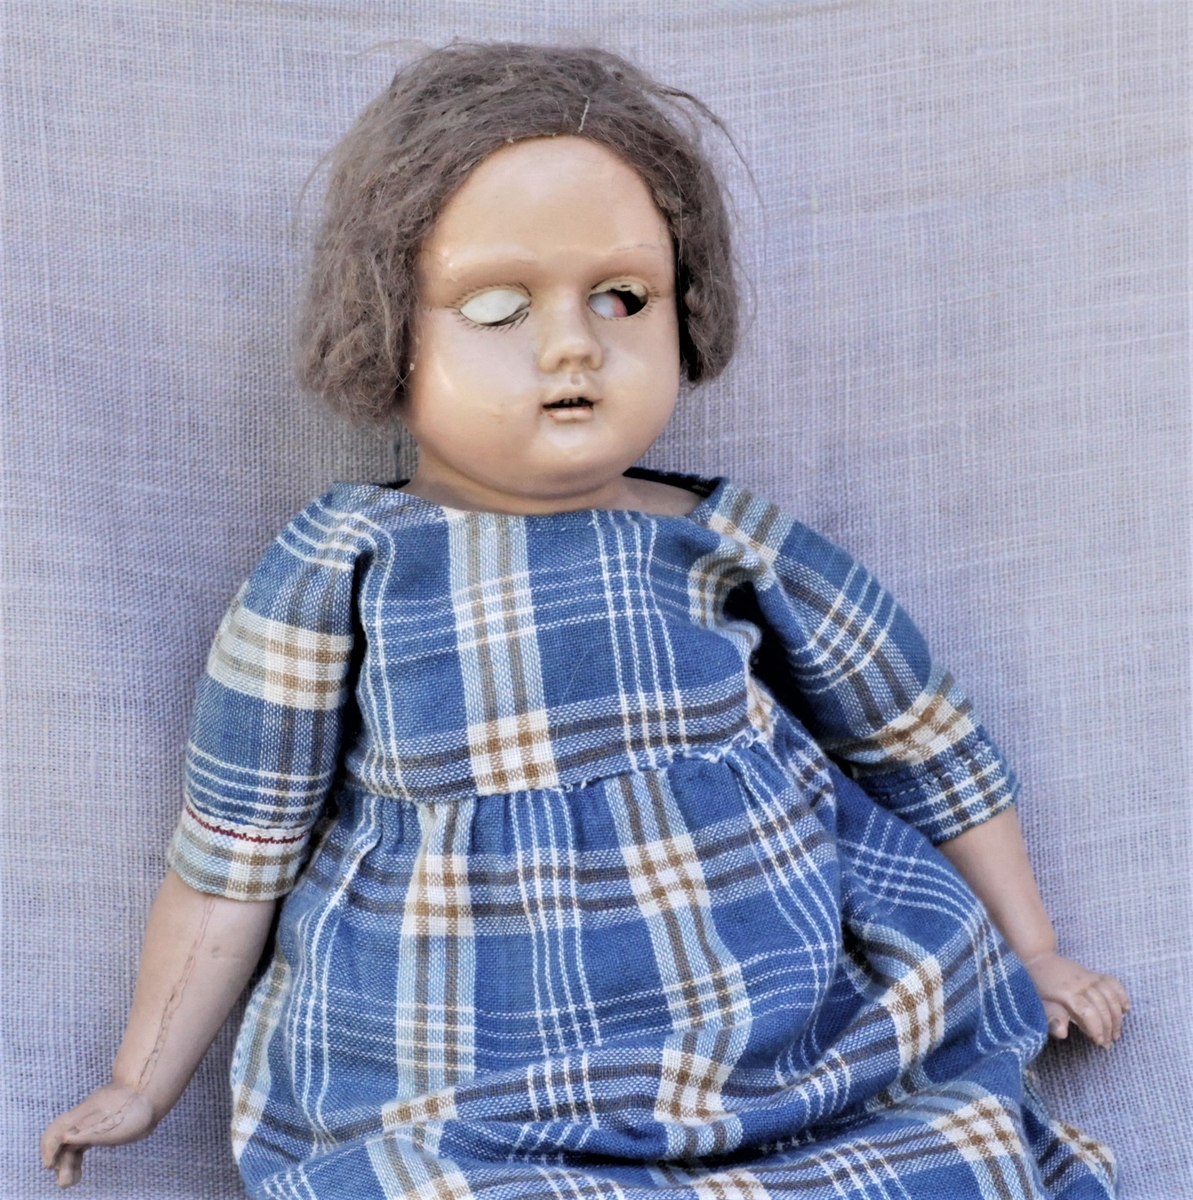 Dukken er en tysk "Skilpadde dukke", modell Åse. Tøykropp, celluloidhode og armer. Original kjole og klær. Brukt av giveren selv og hennes døtre